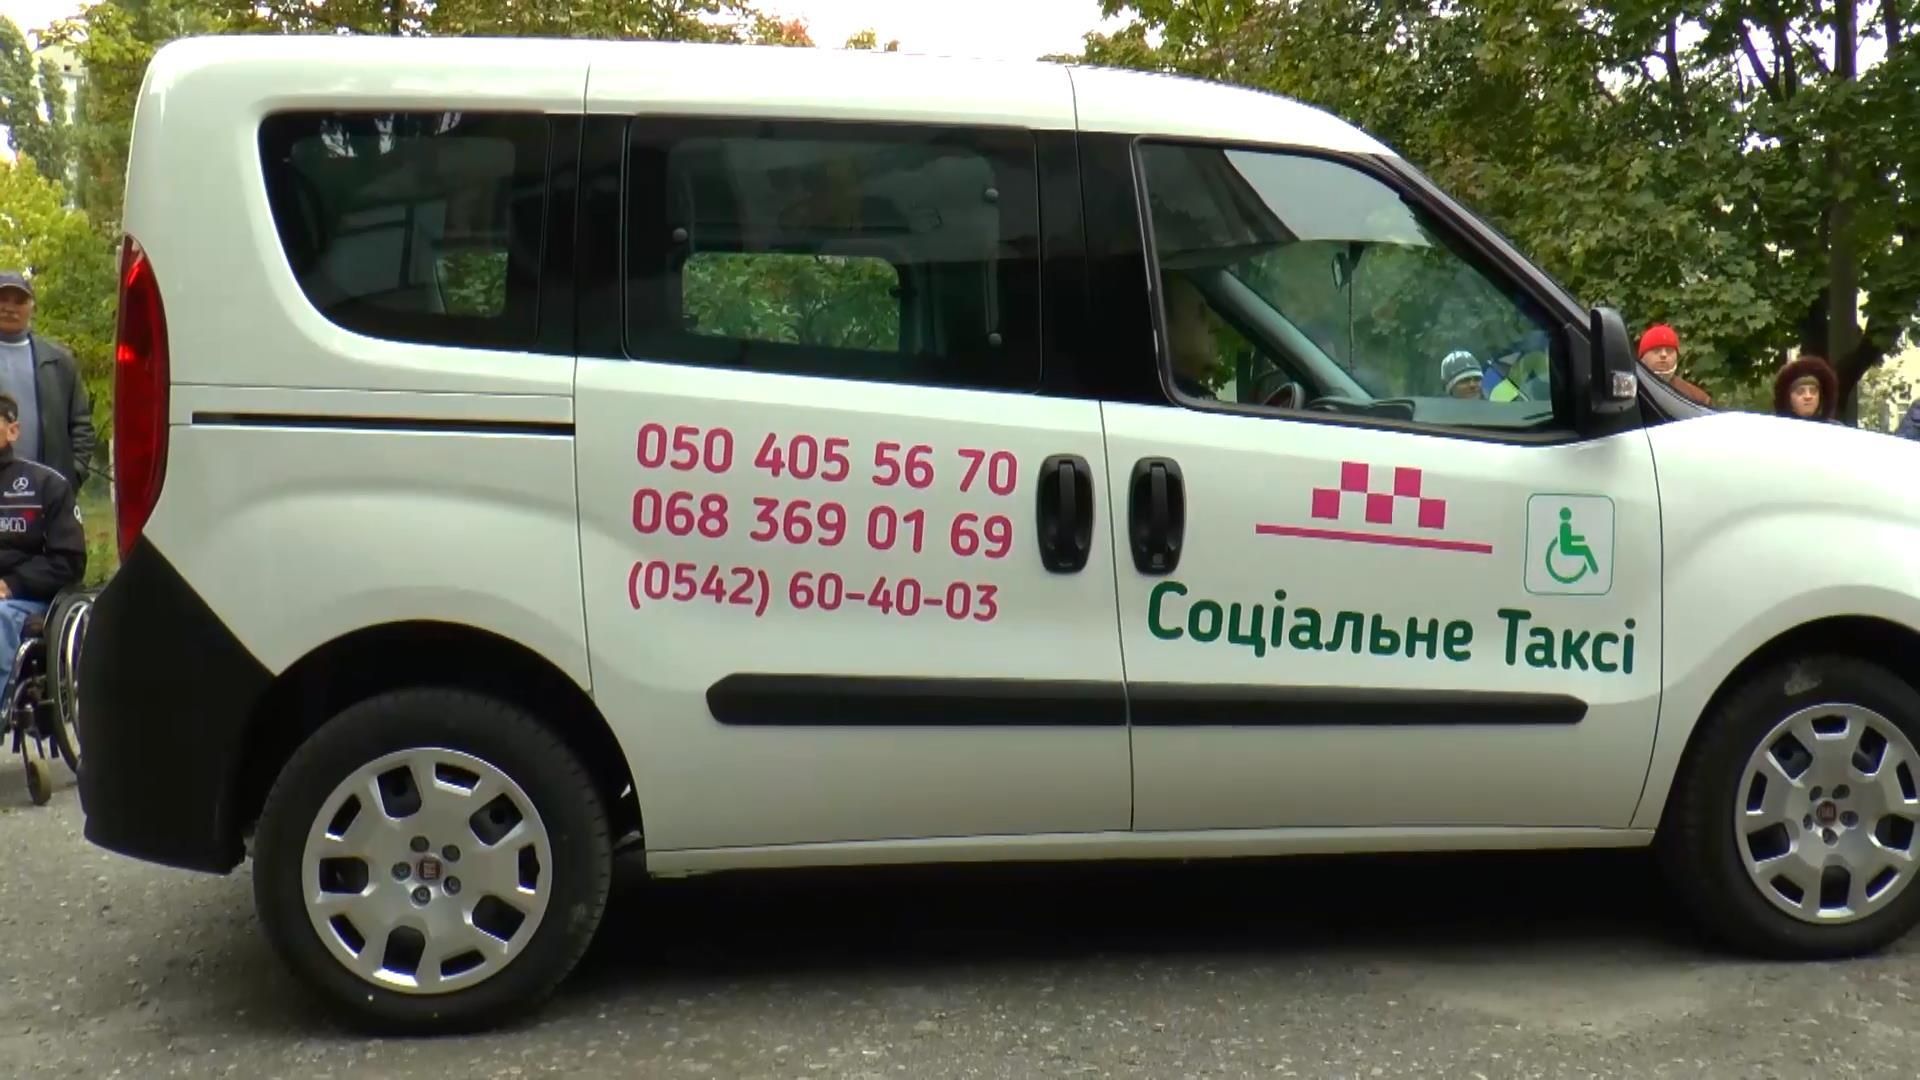 Первое бесплатное такси появилось в Украине